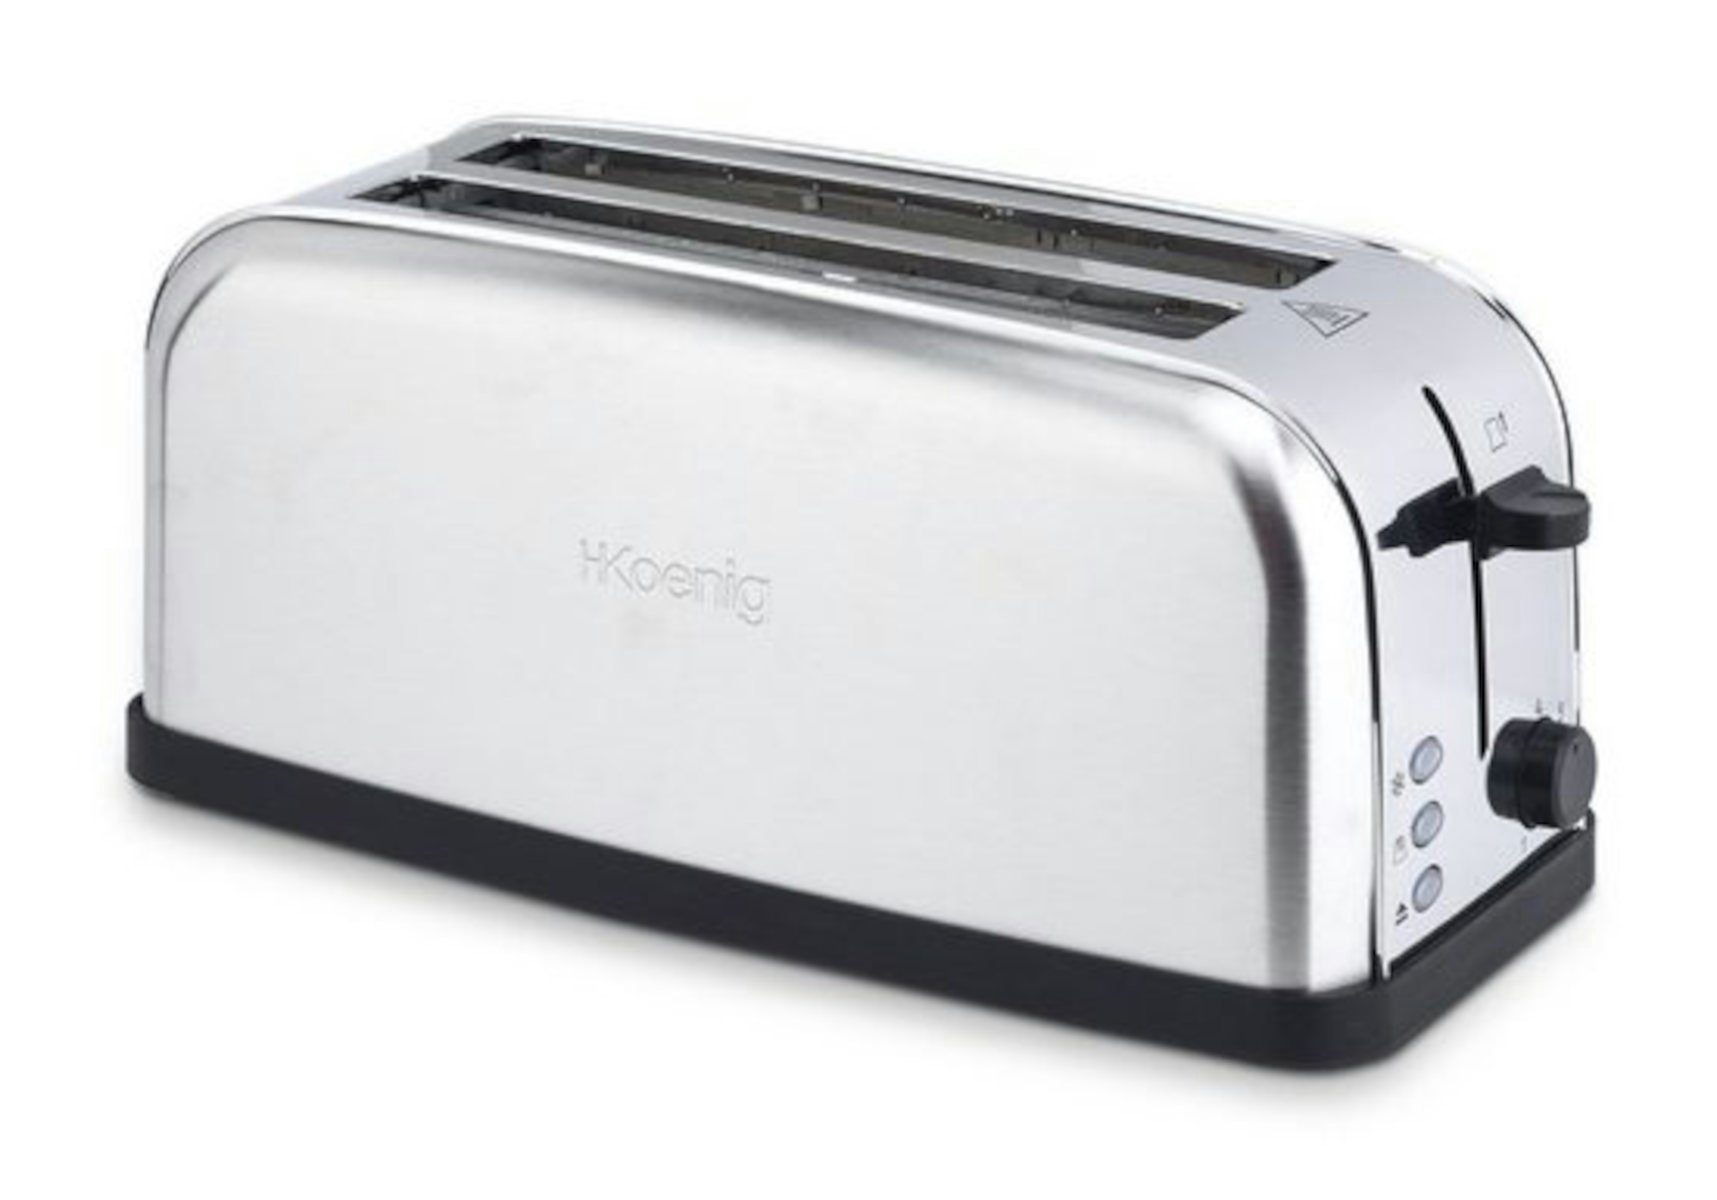 H.Koenig Toaster TOS28 Langschlitz-Toaster für 4 Scheiben Toast, 1500 W